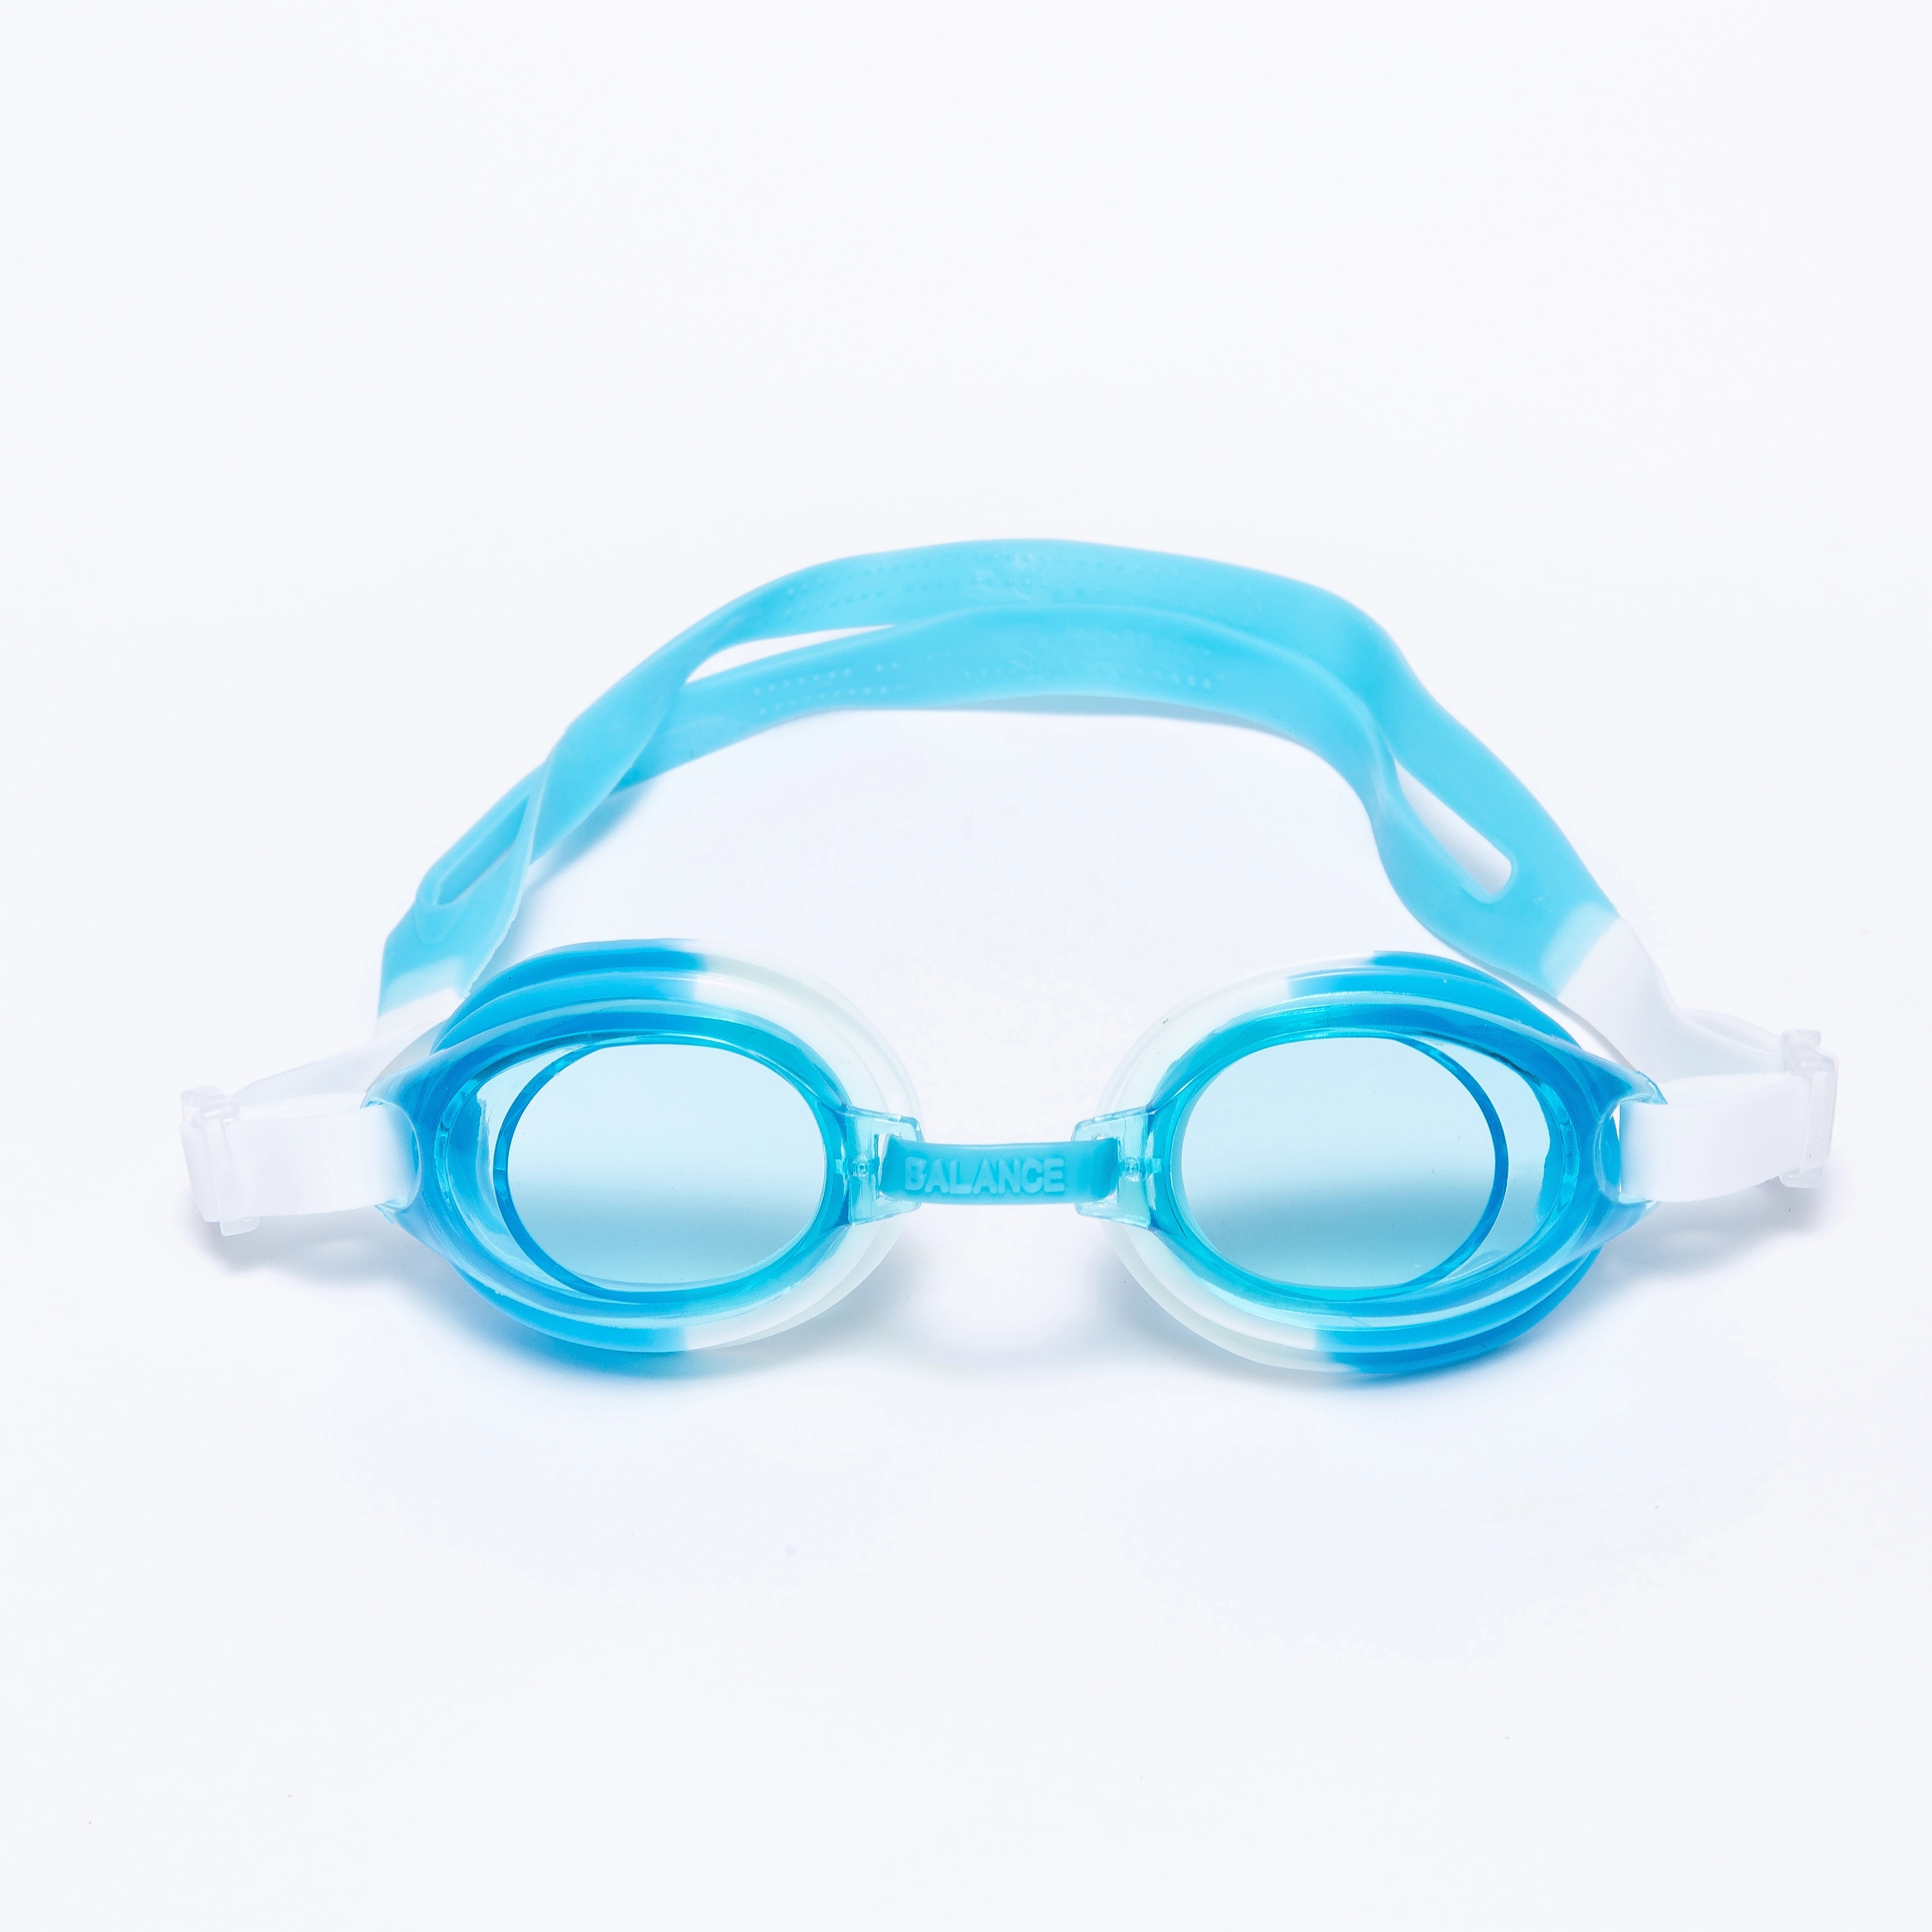 糖果色儿童游泳眼镜潜水镜盒装可爱透明泳镜儿童